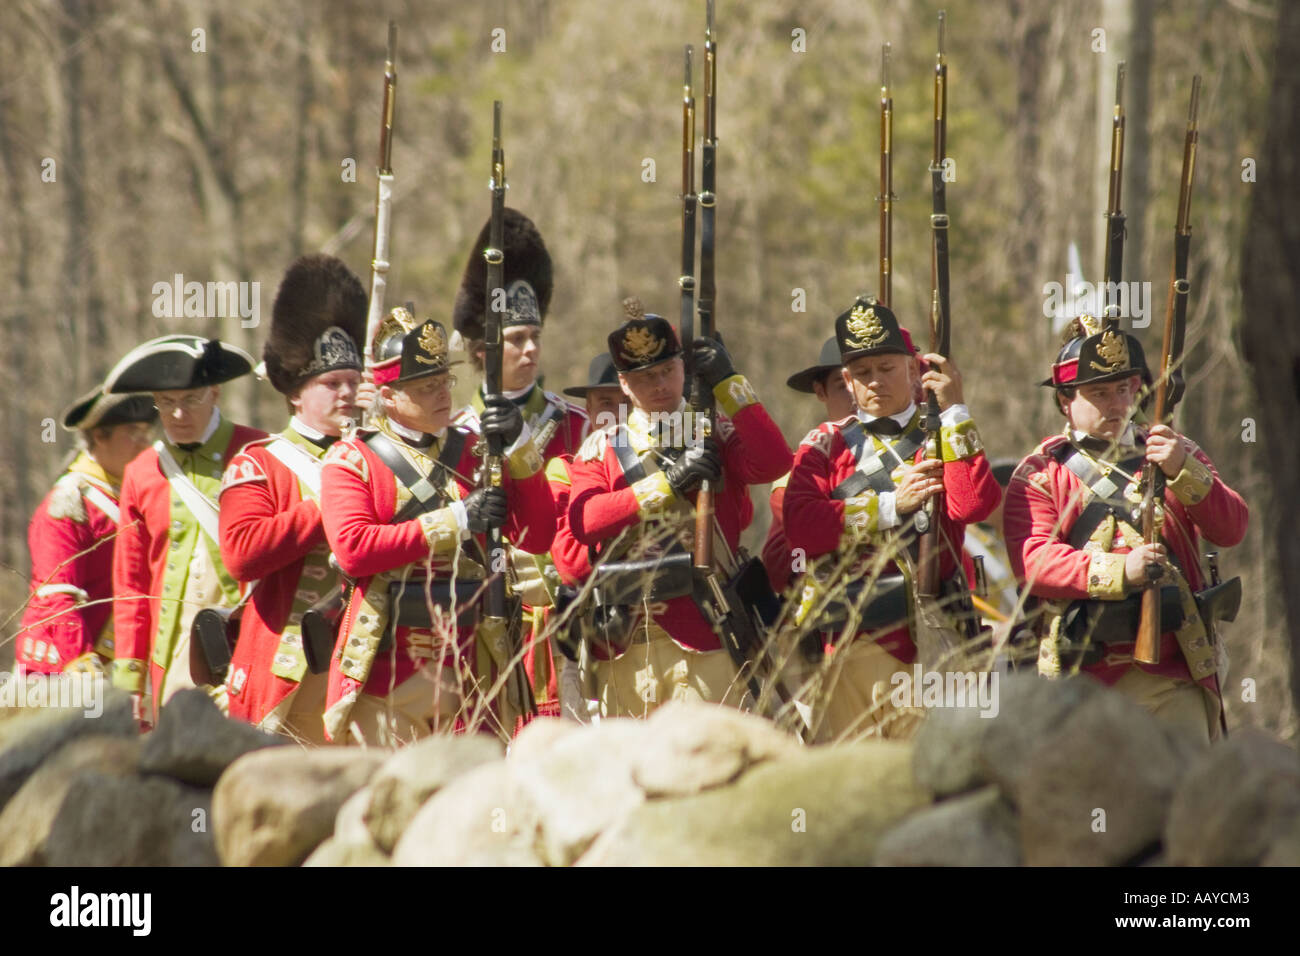 Attendre que l'armée britannique sur le front de bataille Minute Man National Historical Park Massachusetts Banque D'Images